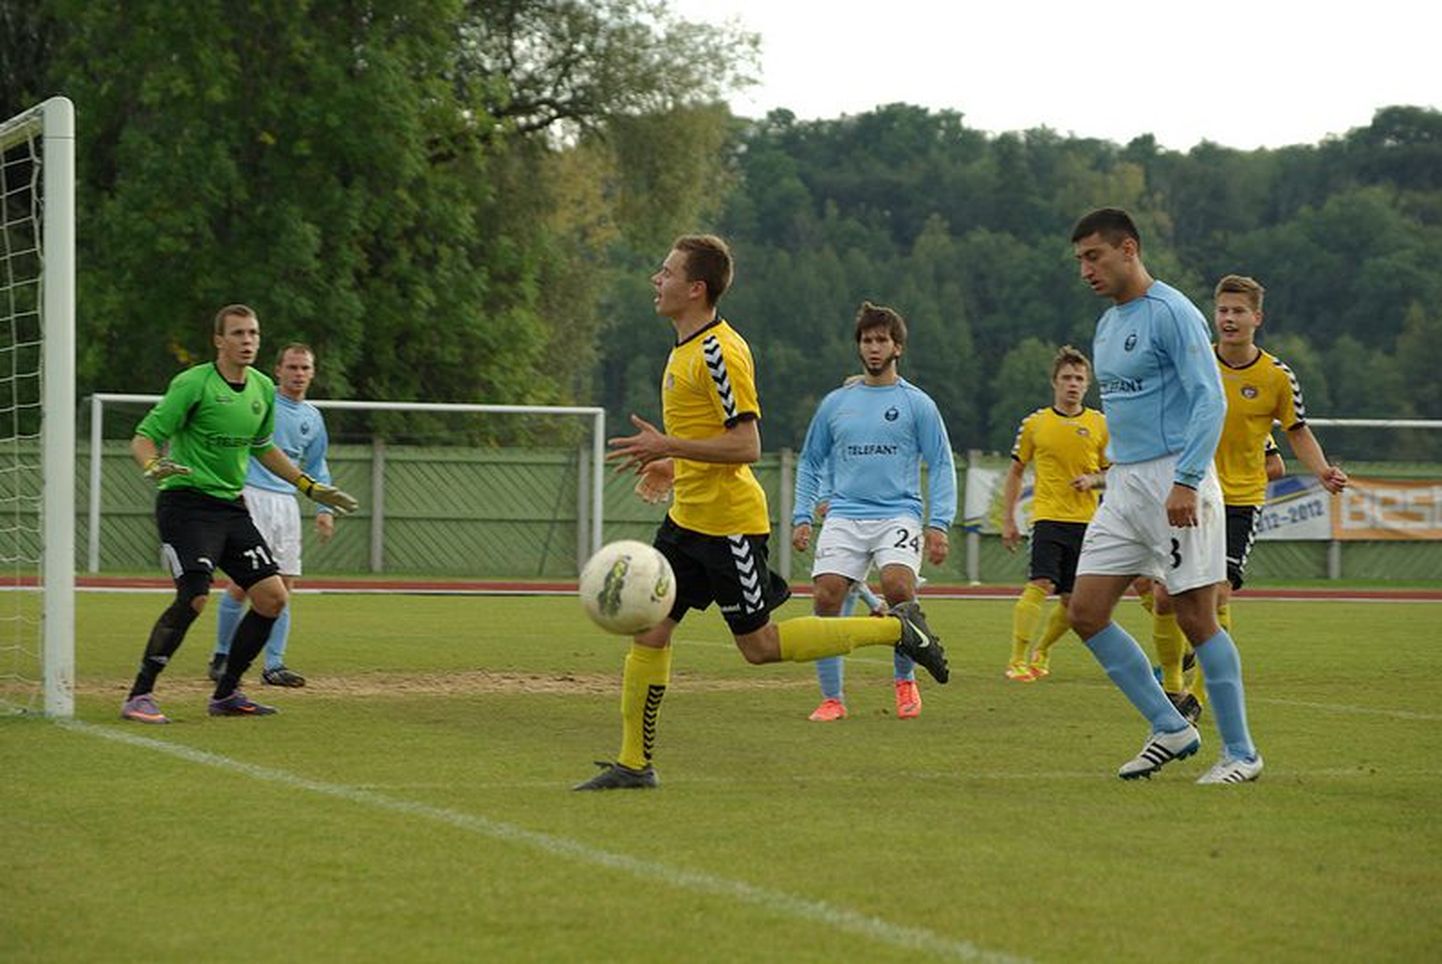 Pühapäeval Viljandis FC Puuma 4:0 alistanud Tulevik pidi kolmapäeval võõrsil samale vastasele alla vanduma.